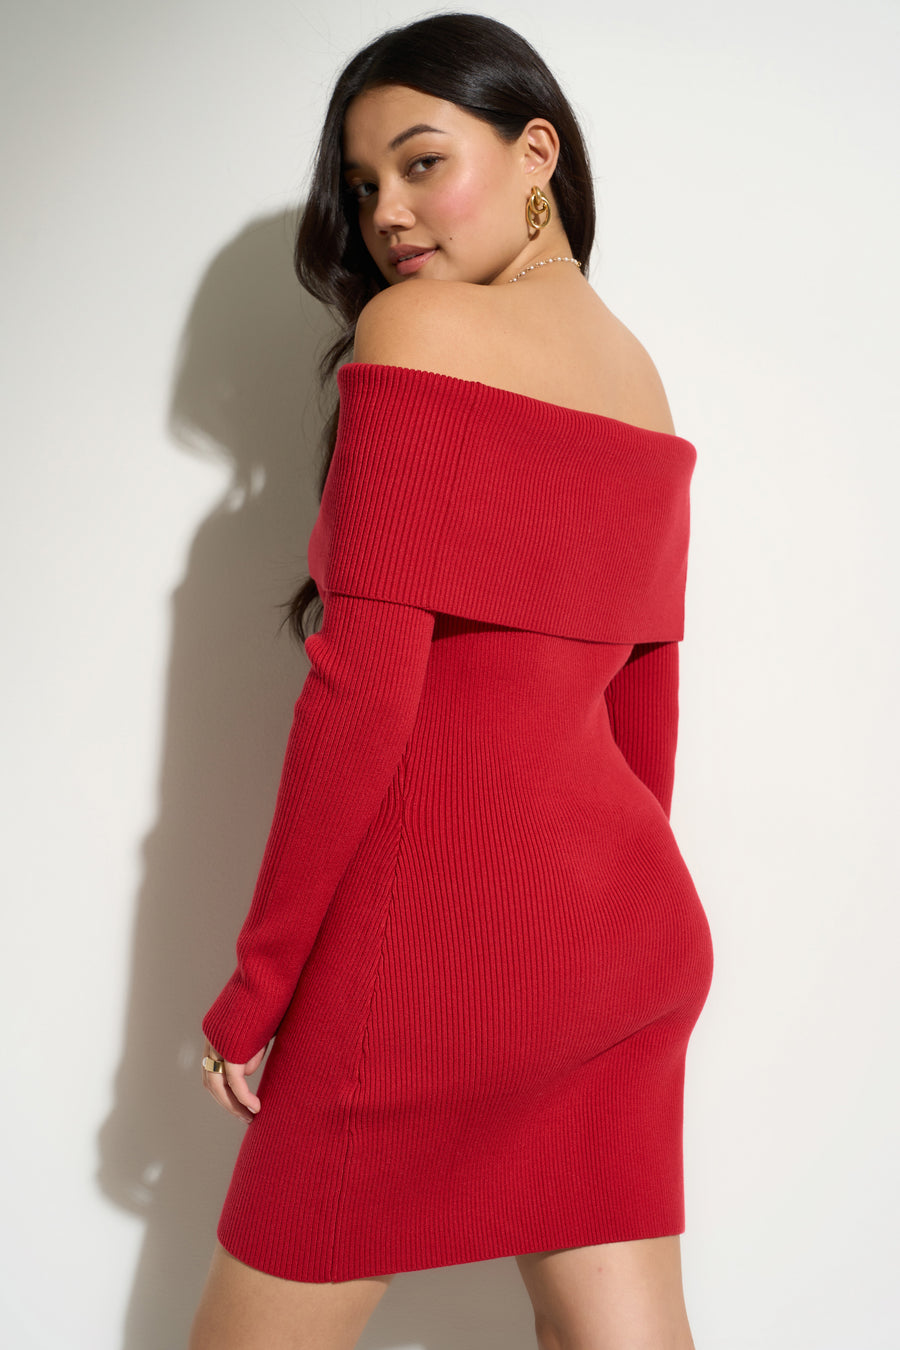 Marie Knit Mini - Red